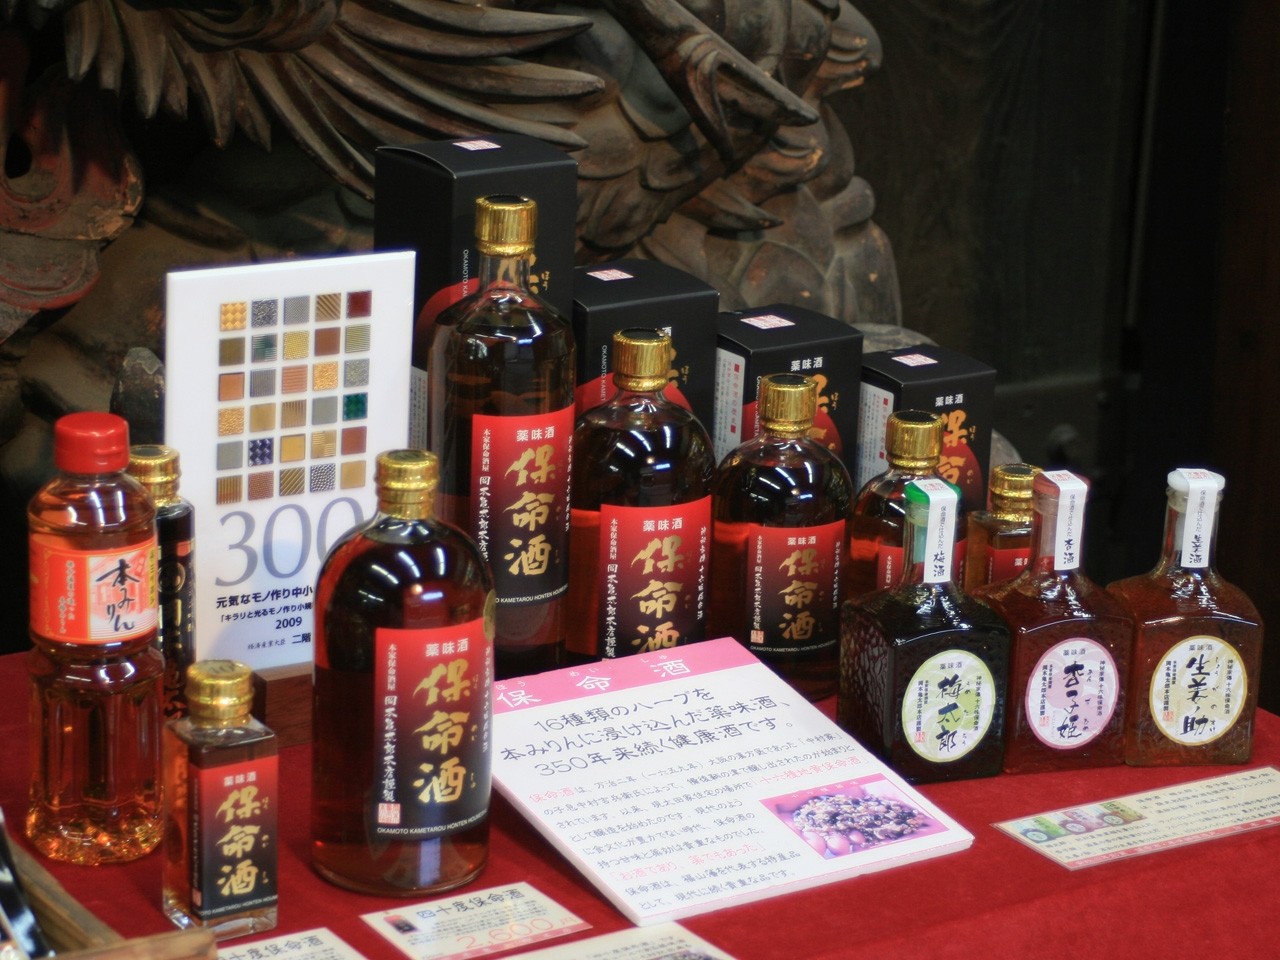 保命酒・保命酒シリーズ(梅・杏・生姜)・本味醂。
この他にも、保命酒を使った銘菓や調味料なども。